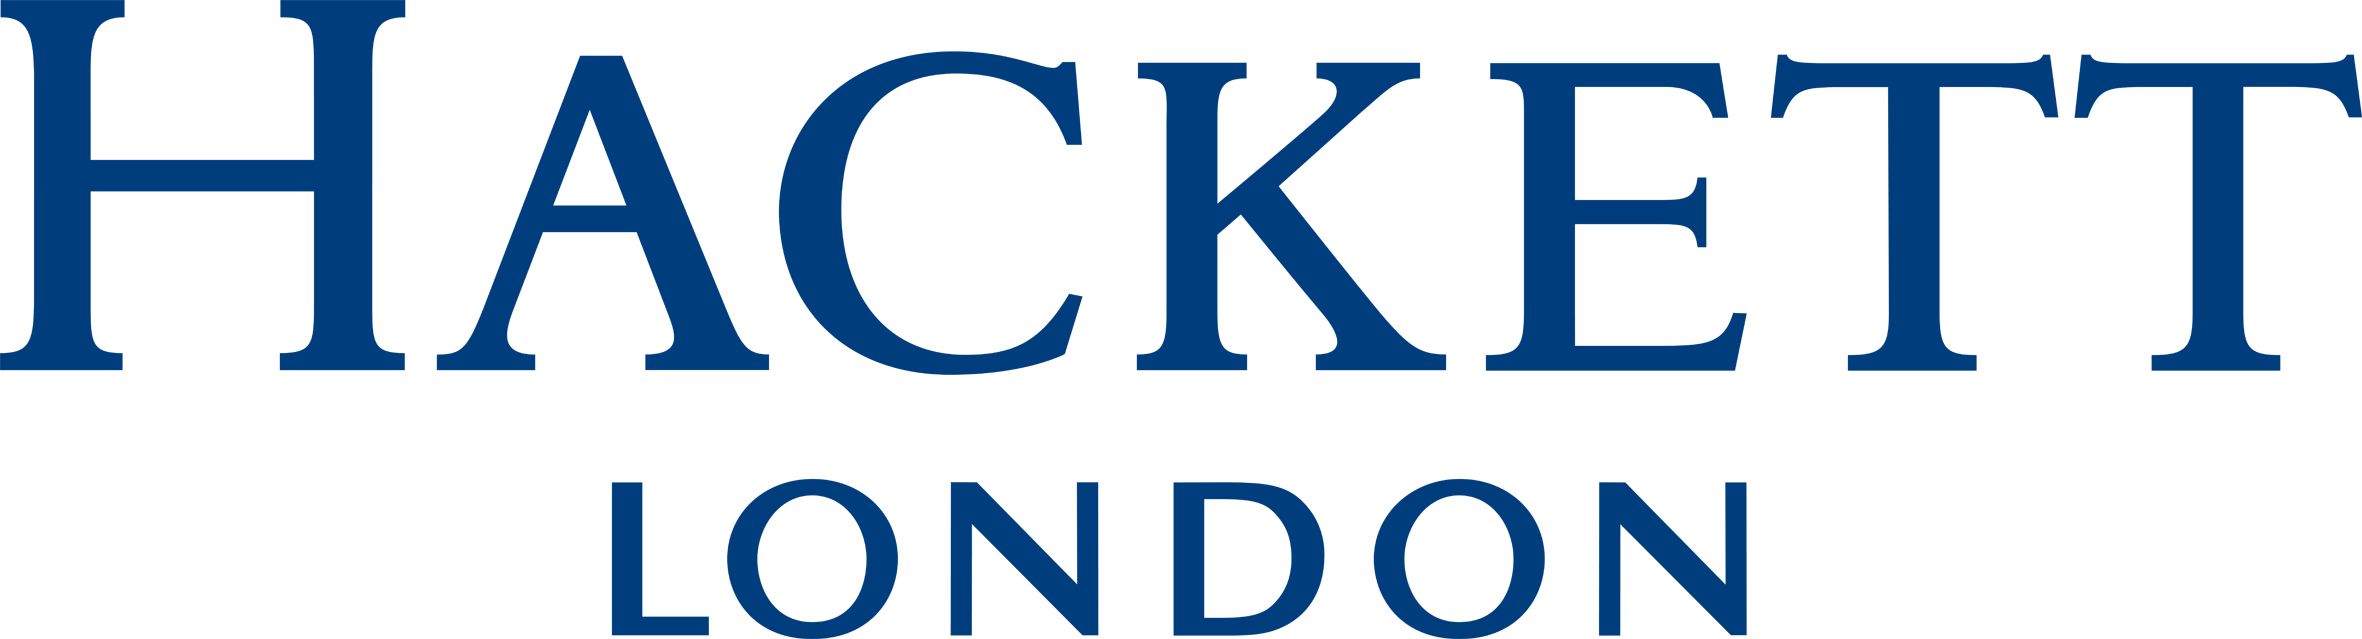 HACKETT LONDON